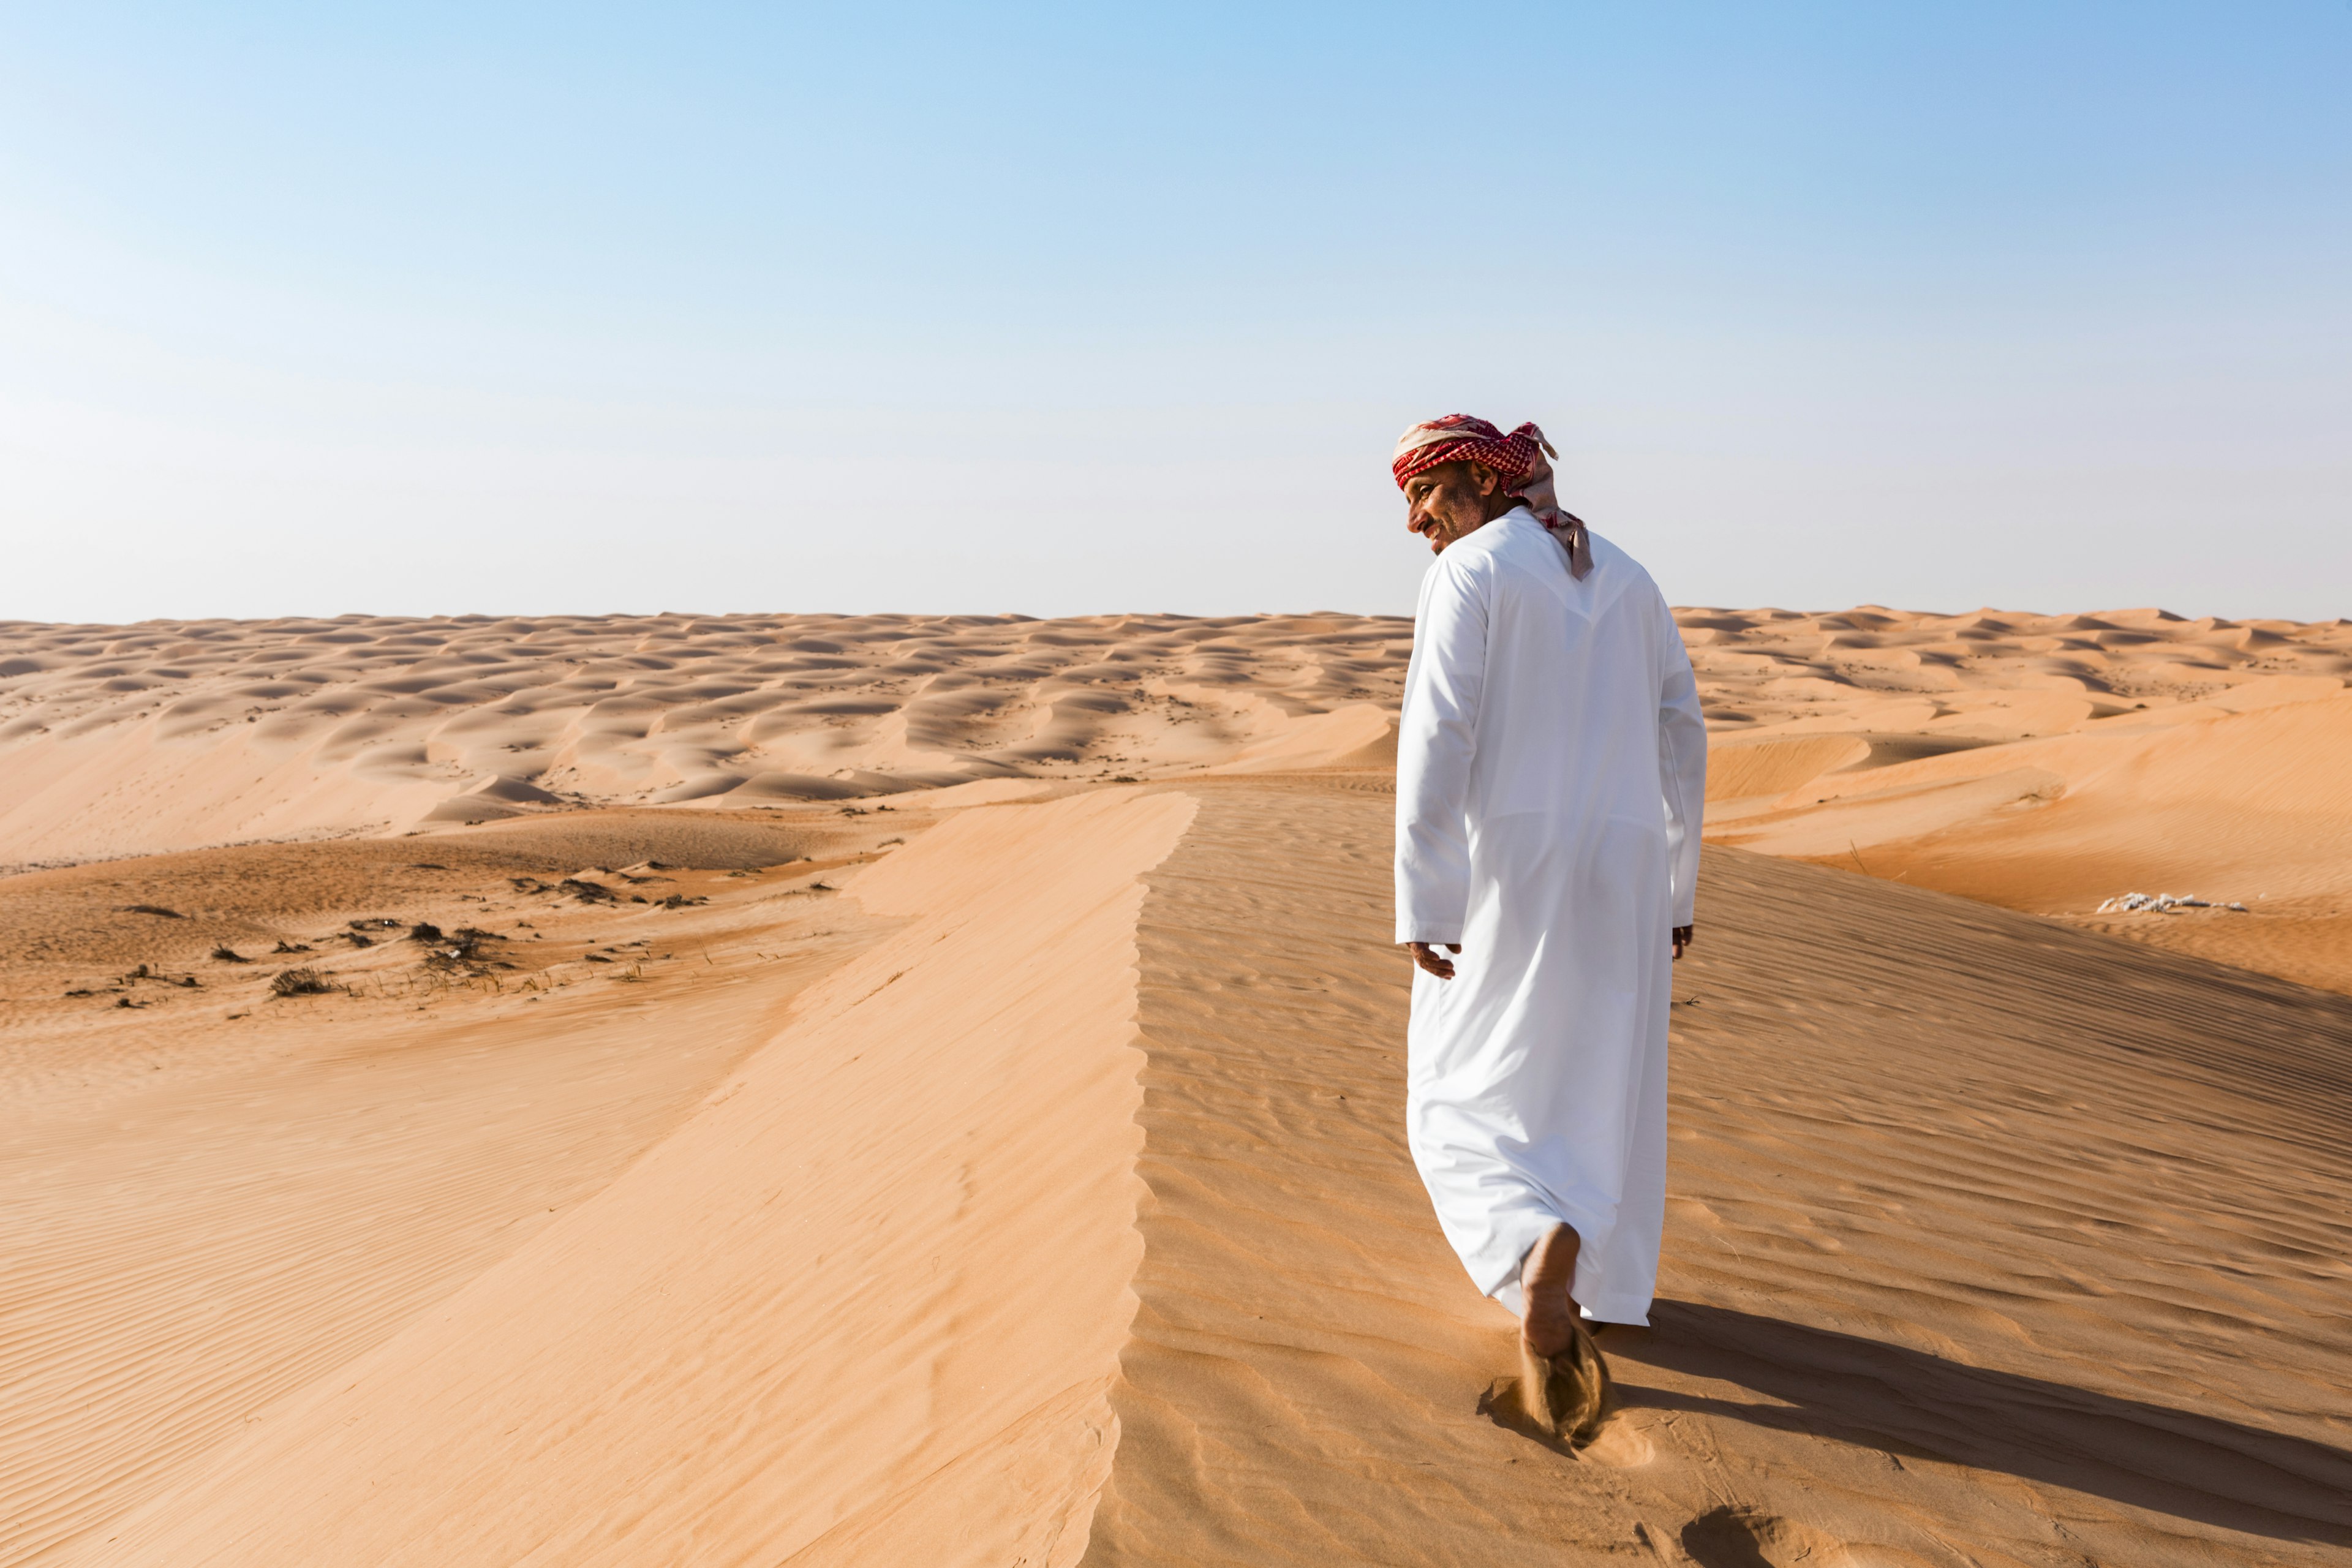 Bedouin walking in the desert, Wahiba Sands, Oman